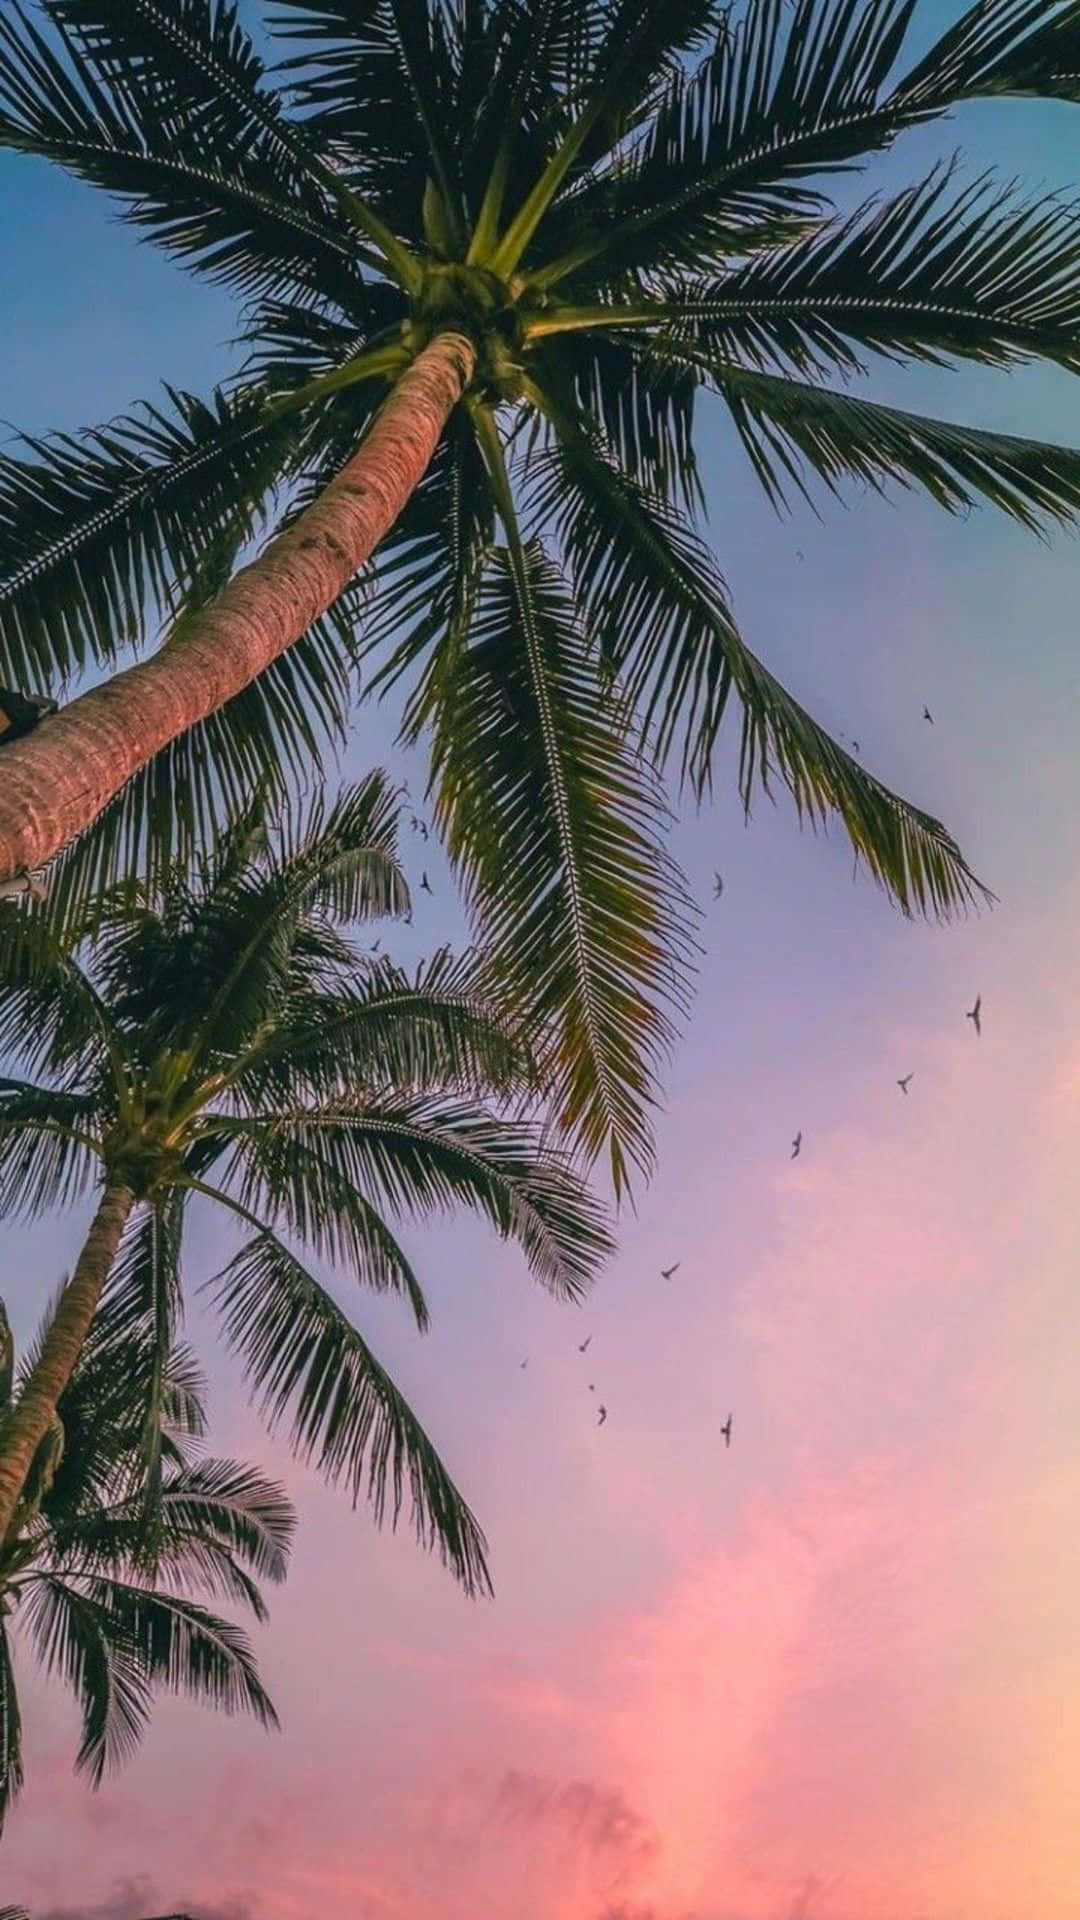 Slap af ved Palm træerne med din iPhone. Wallpaper